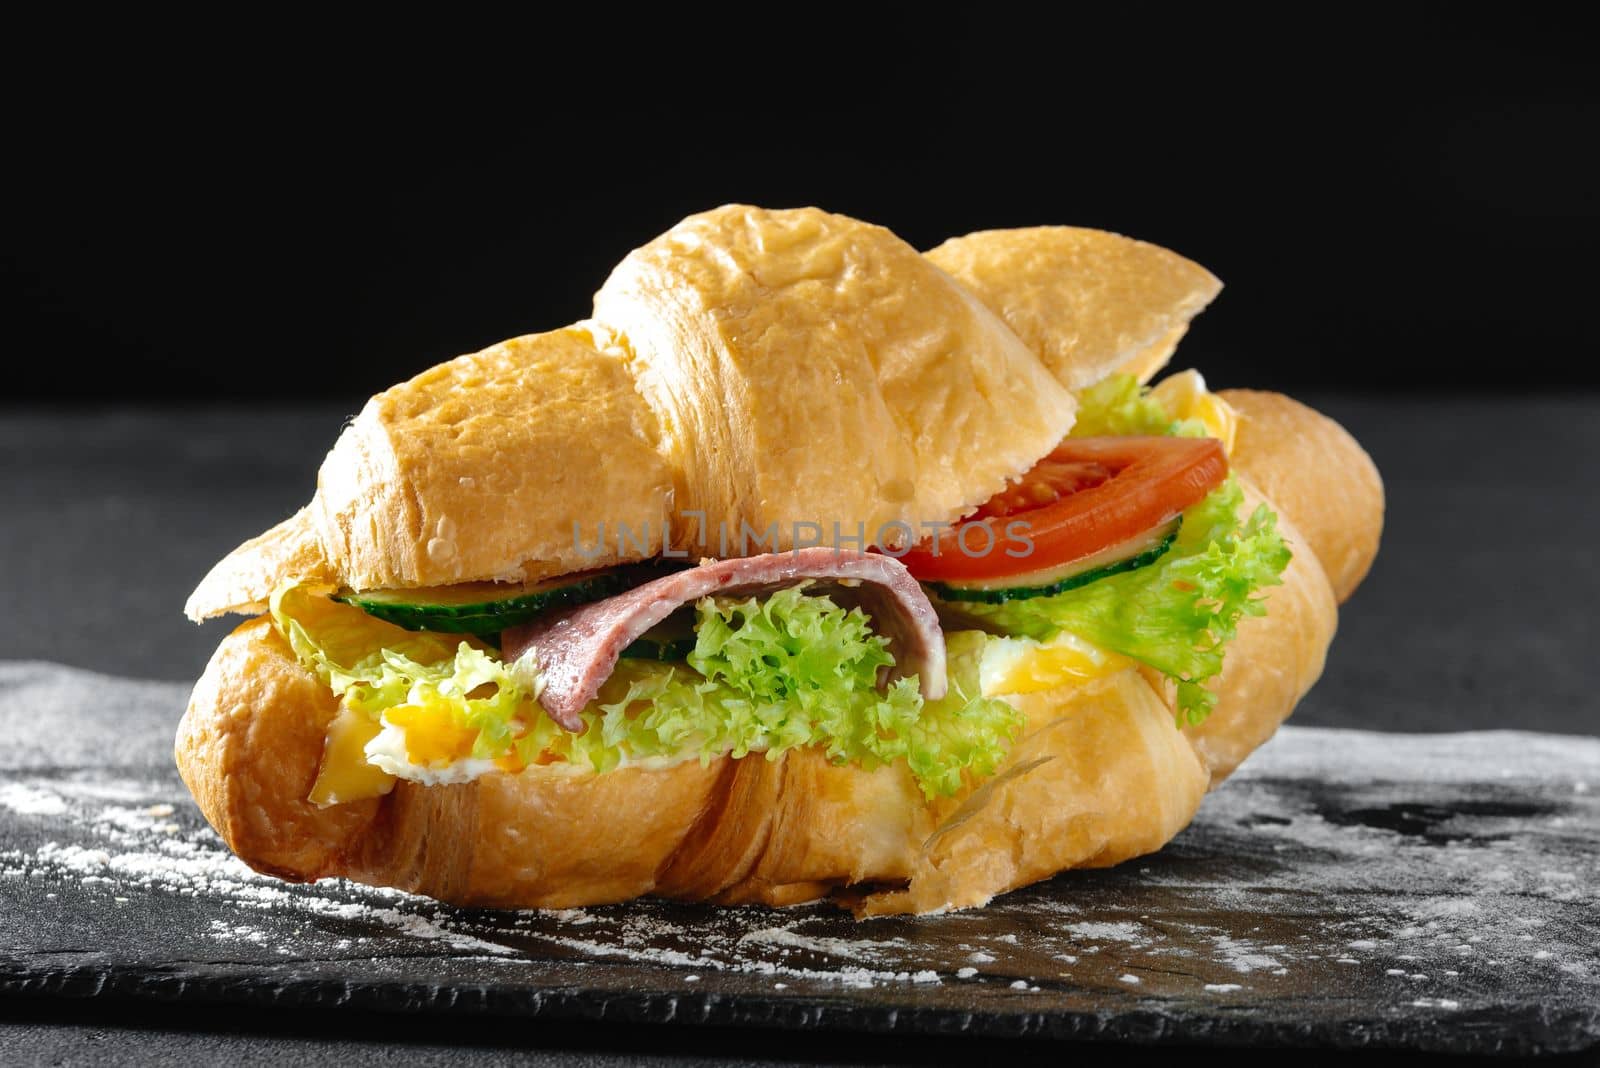 Croissant sandwich with sausage on a dark background by gulyaevstudio